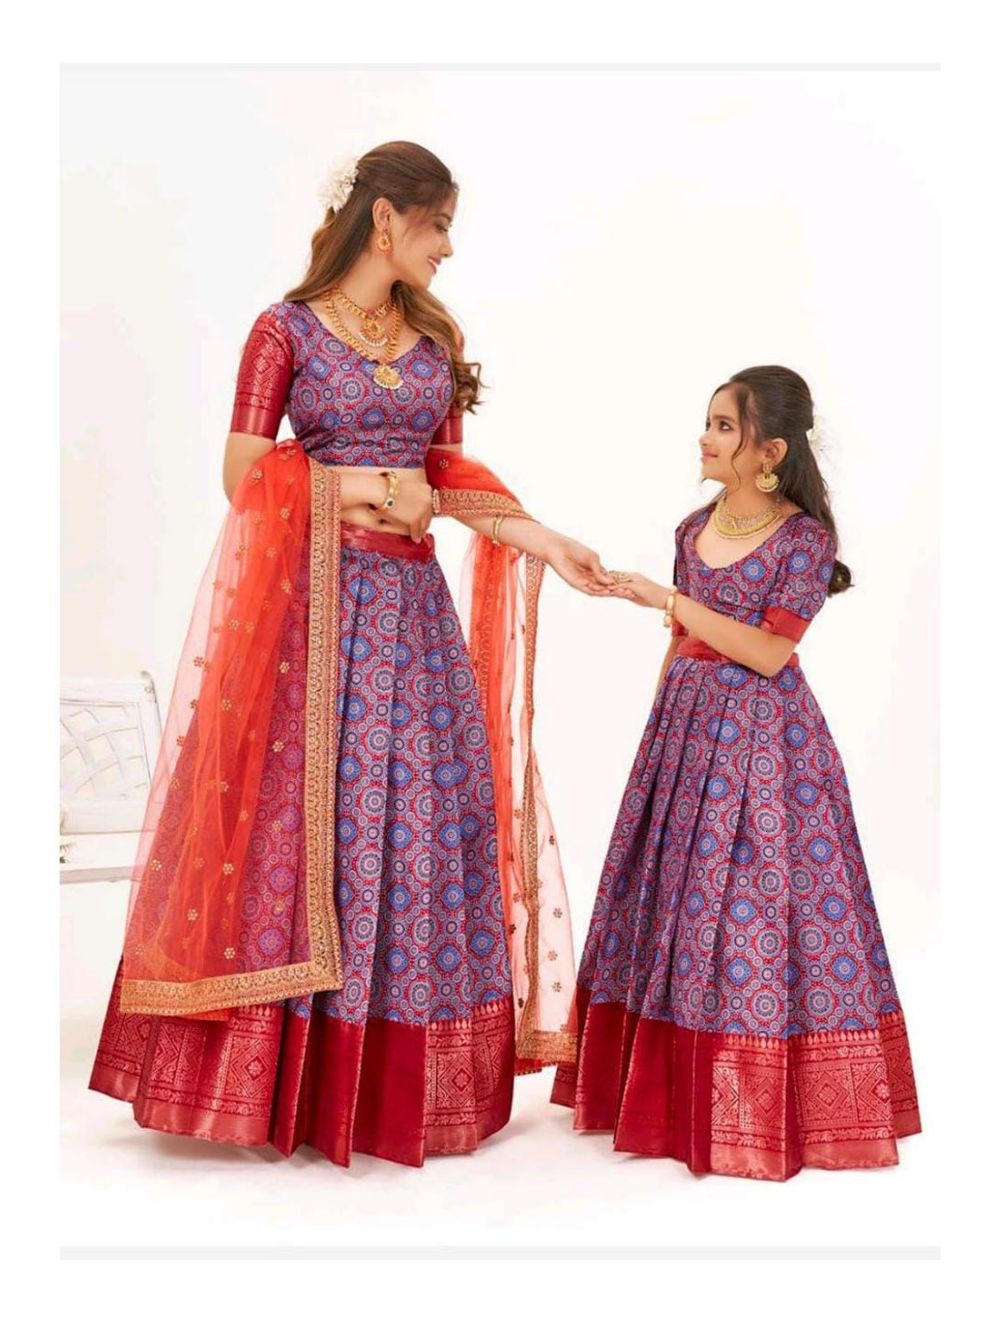 Girls Lehenga for Indian Wedding – Stylish Kids Lehenga | Indian Wedding  Gifts